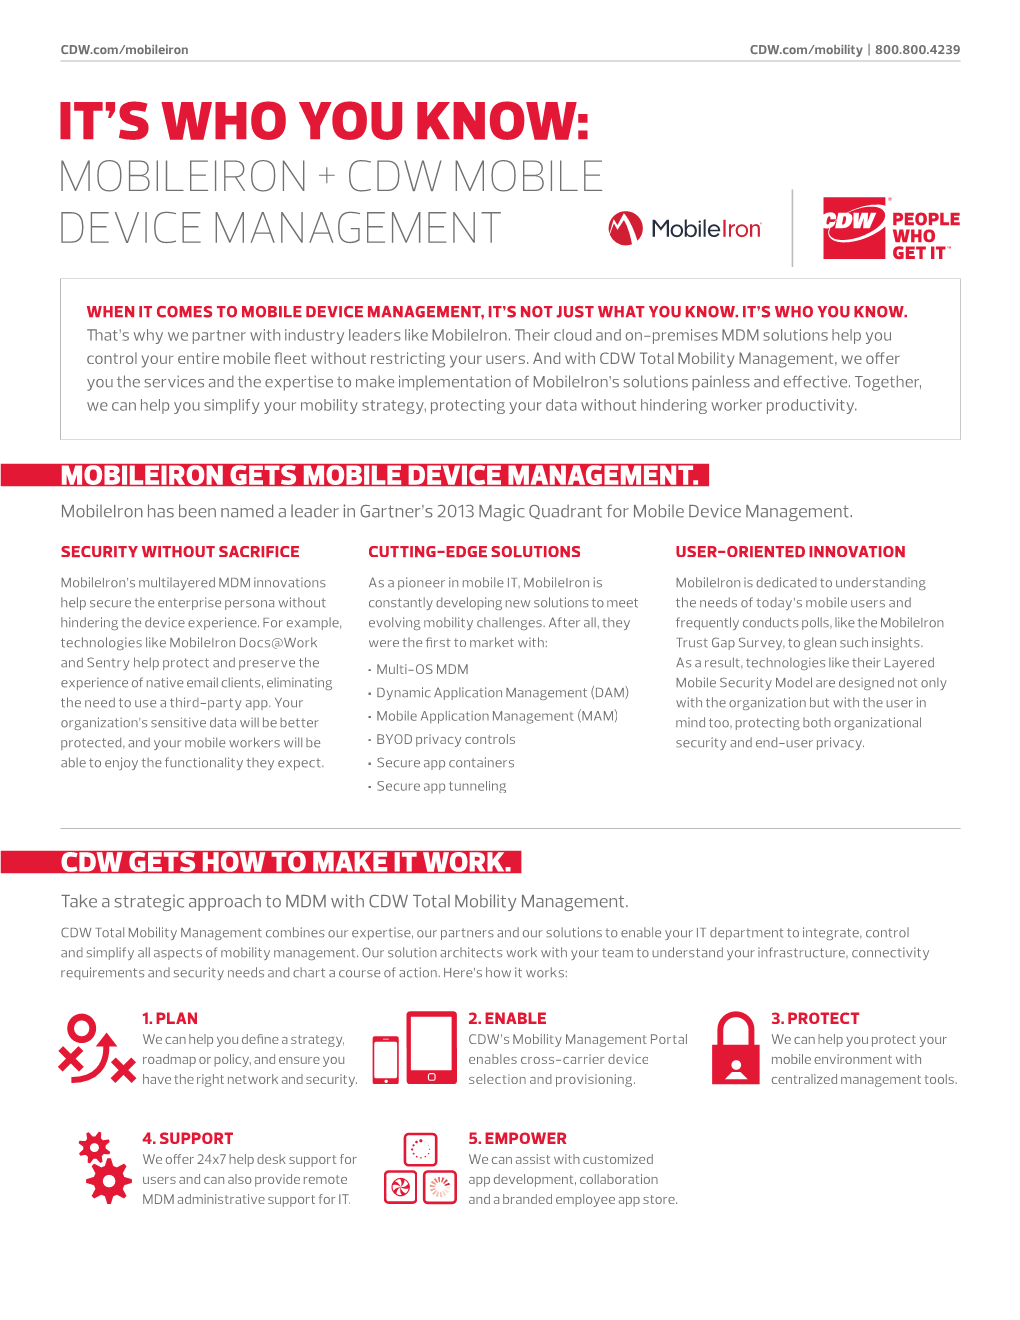 CDW Mobileiron Mobility Partner Practice